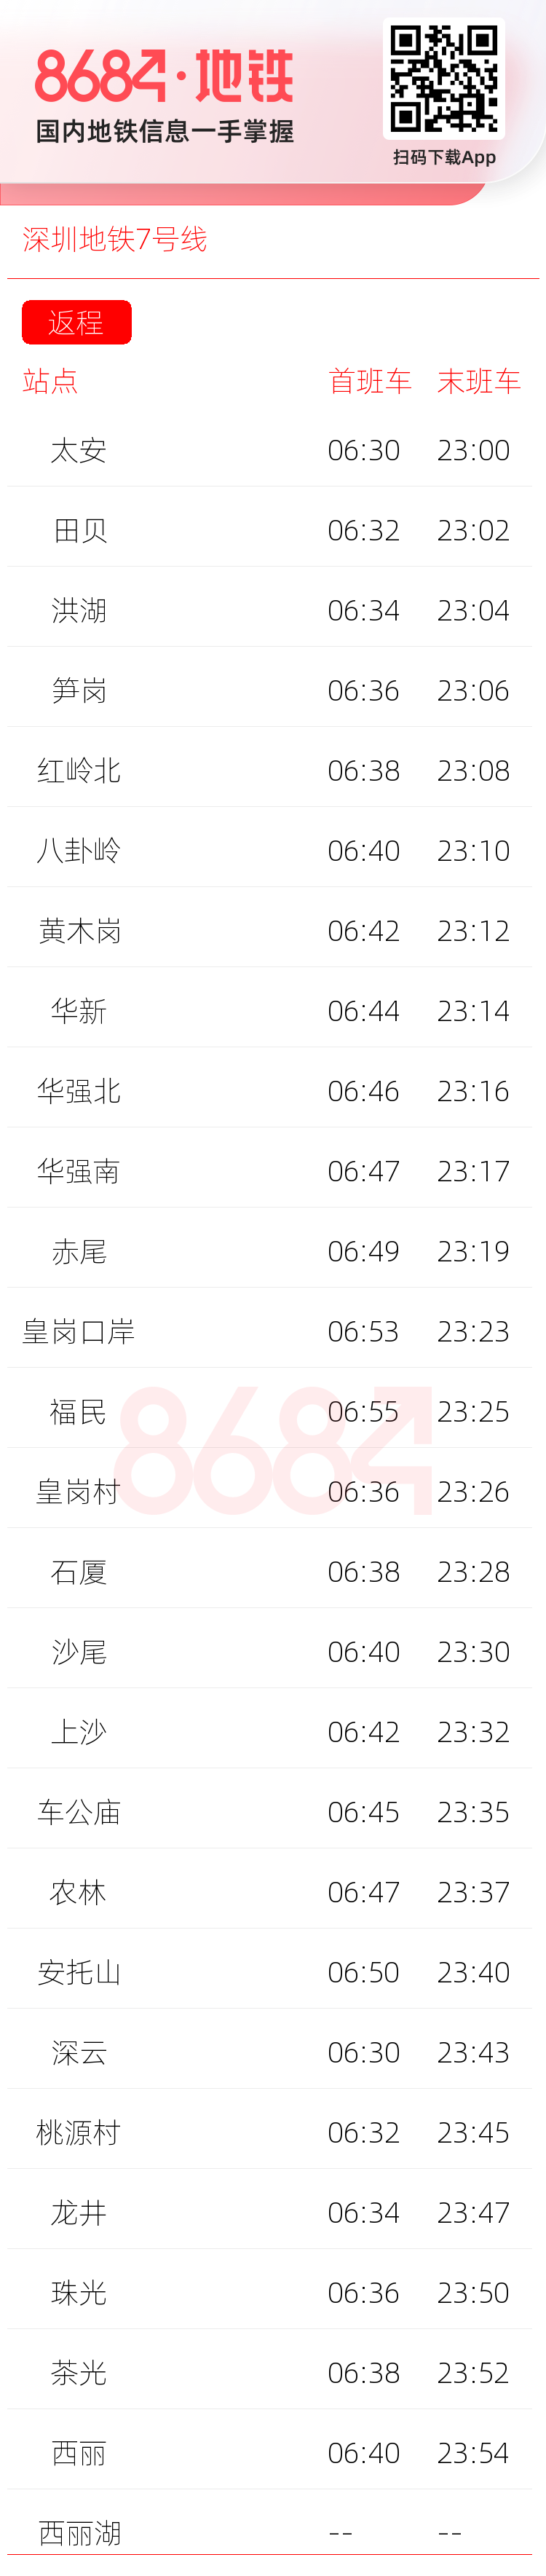 深圳地铁7号线运营时间表